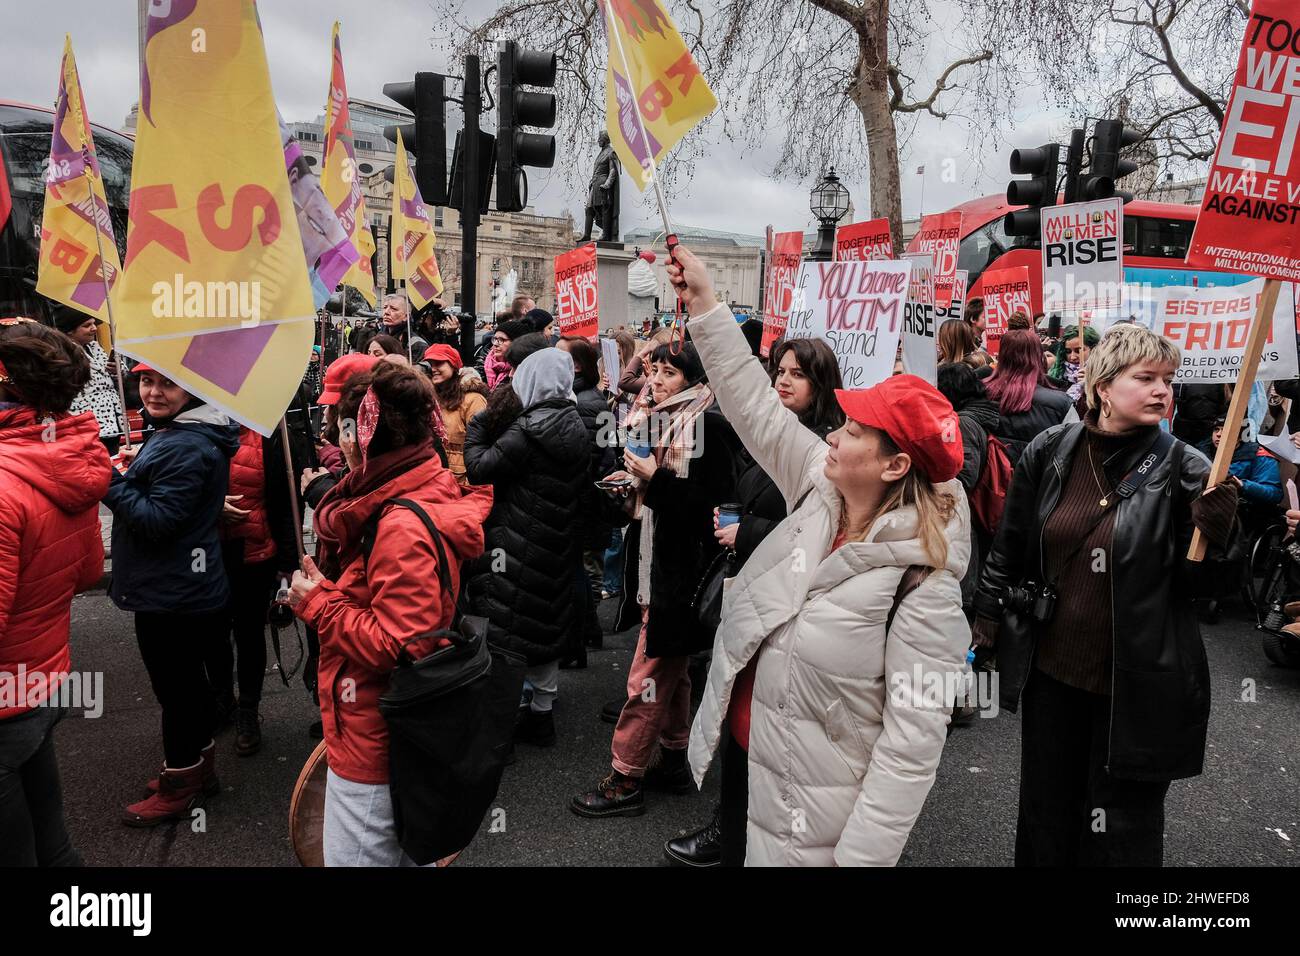 5th mars 2022, Londres, Royaume-Uni. Des centaines de femmes défilent du poste de police de Charing Cross à New Scotland Yard pour souligner le harcèlement des femmes par la police et pour appeler à la fin de la violence contre les femmes en vue de la Journée internationale de la femme le 8th mars. Banque D'Images